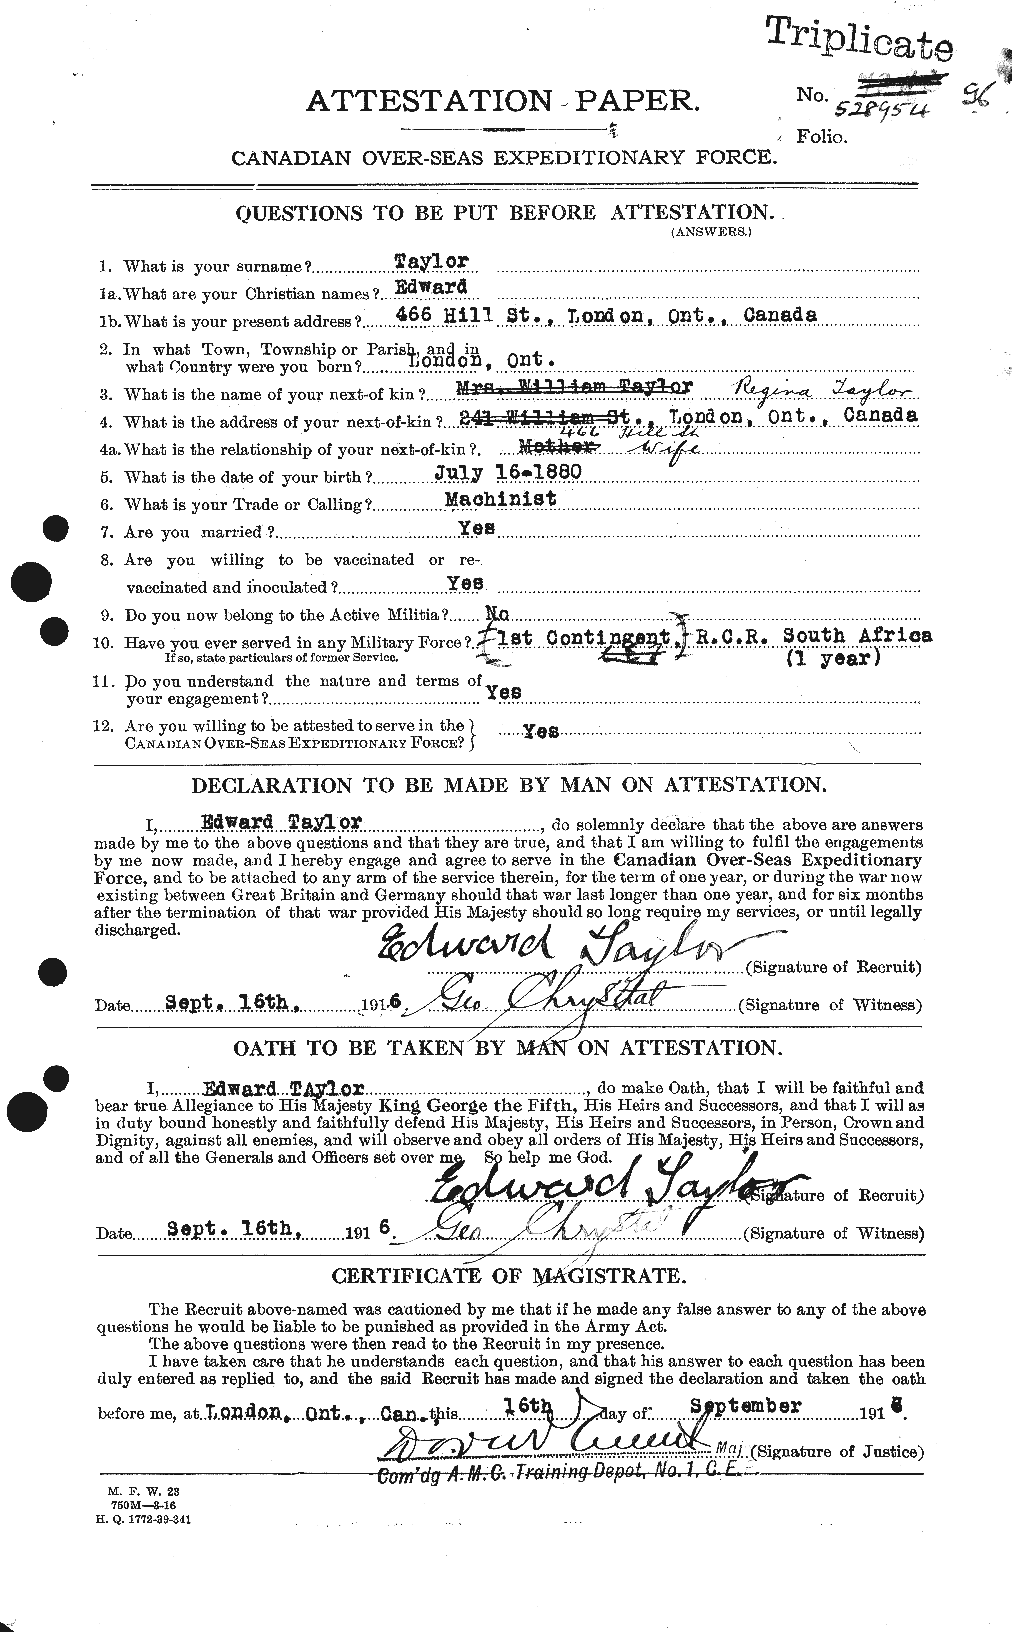 Dossiers du Personnel de la Première Guerre mondiale - CEC 627288a